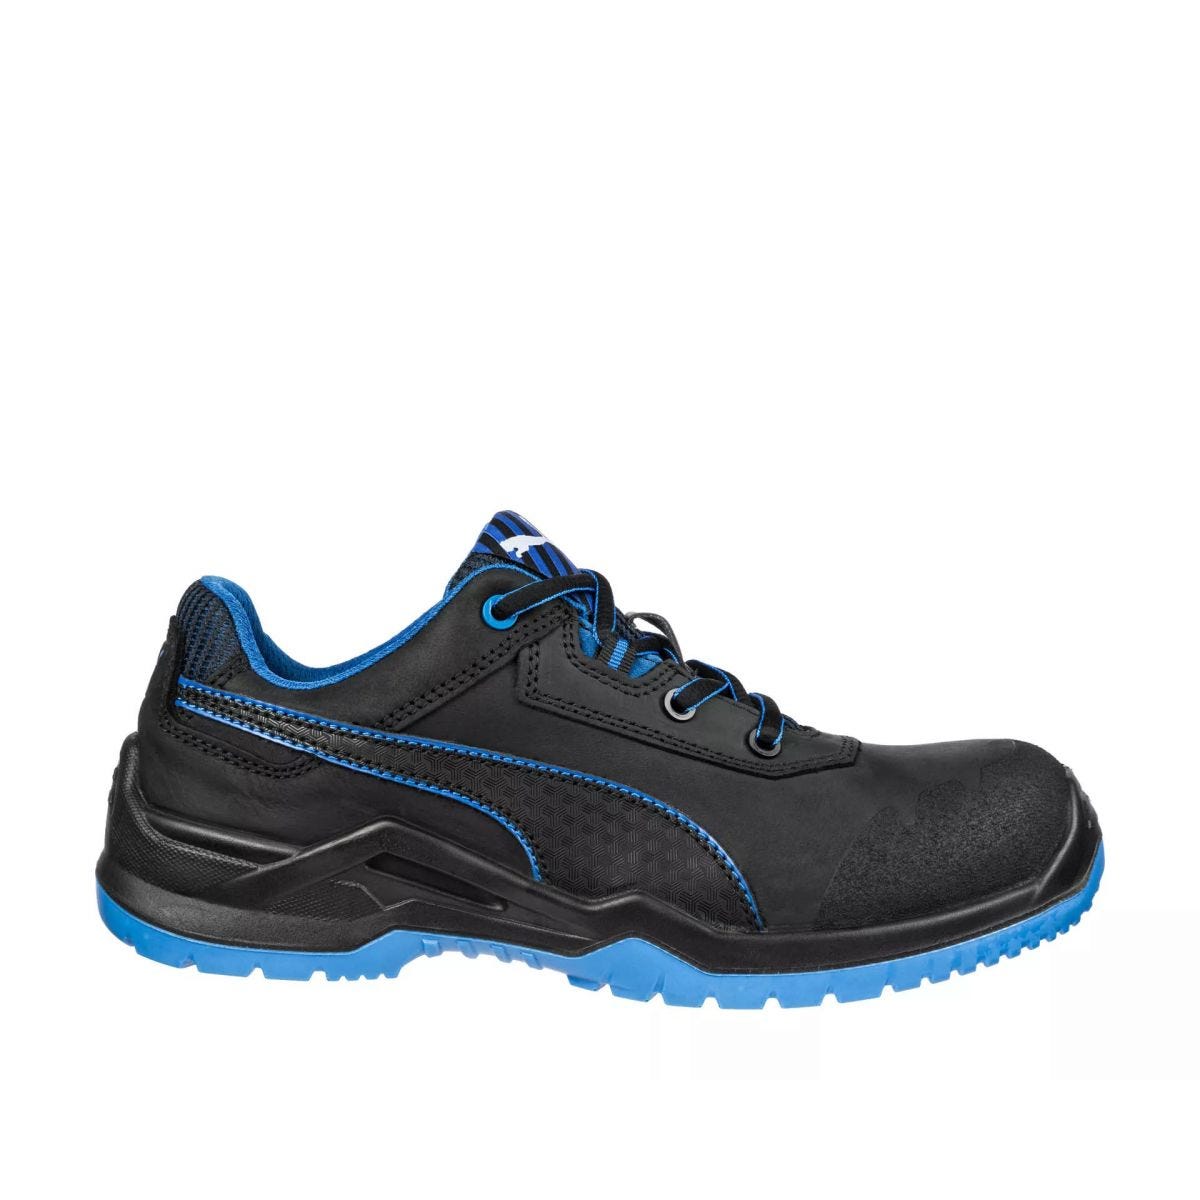 Chaussures de sécurité Argon RX low S3 ESD SRC bleu - Puma - Taille 41 0